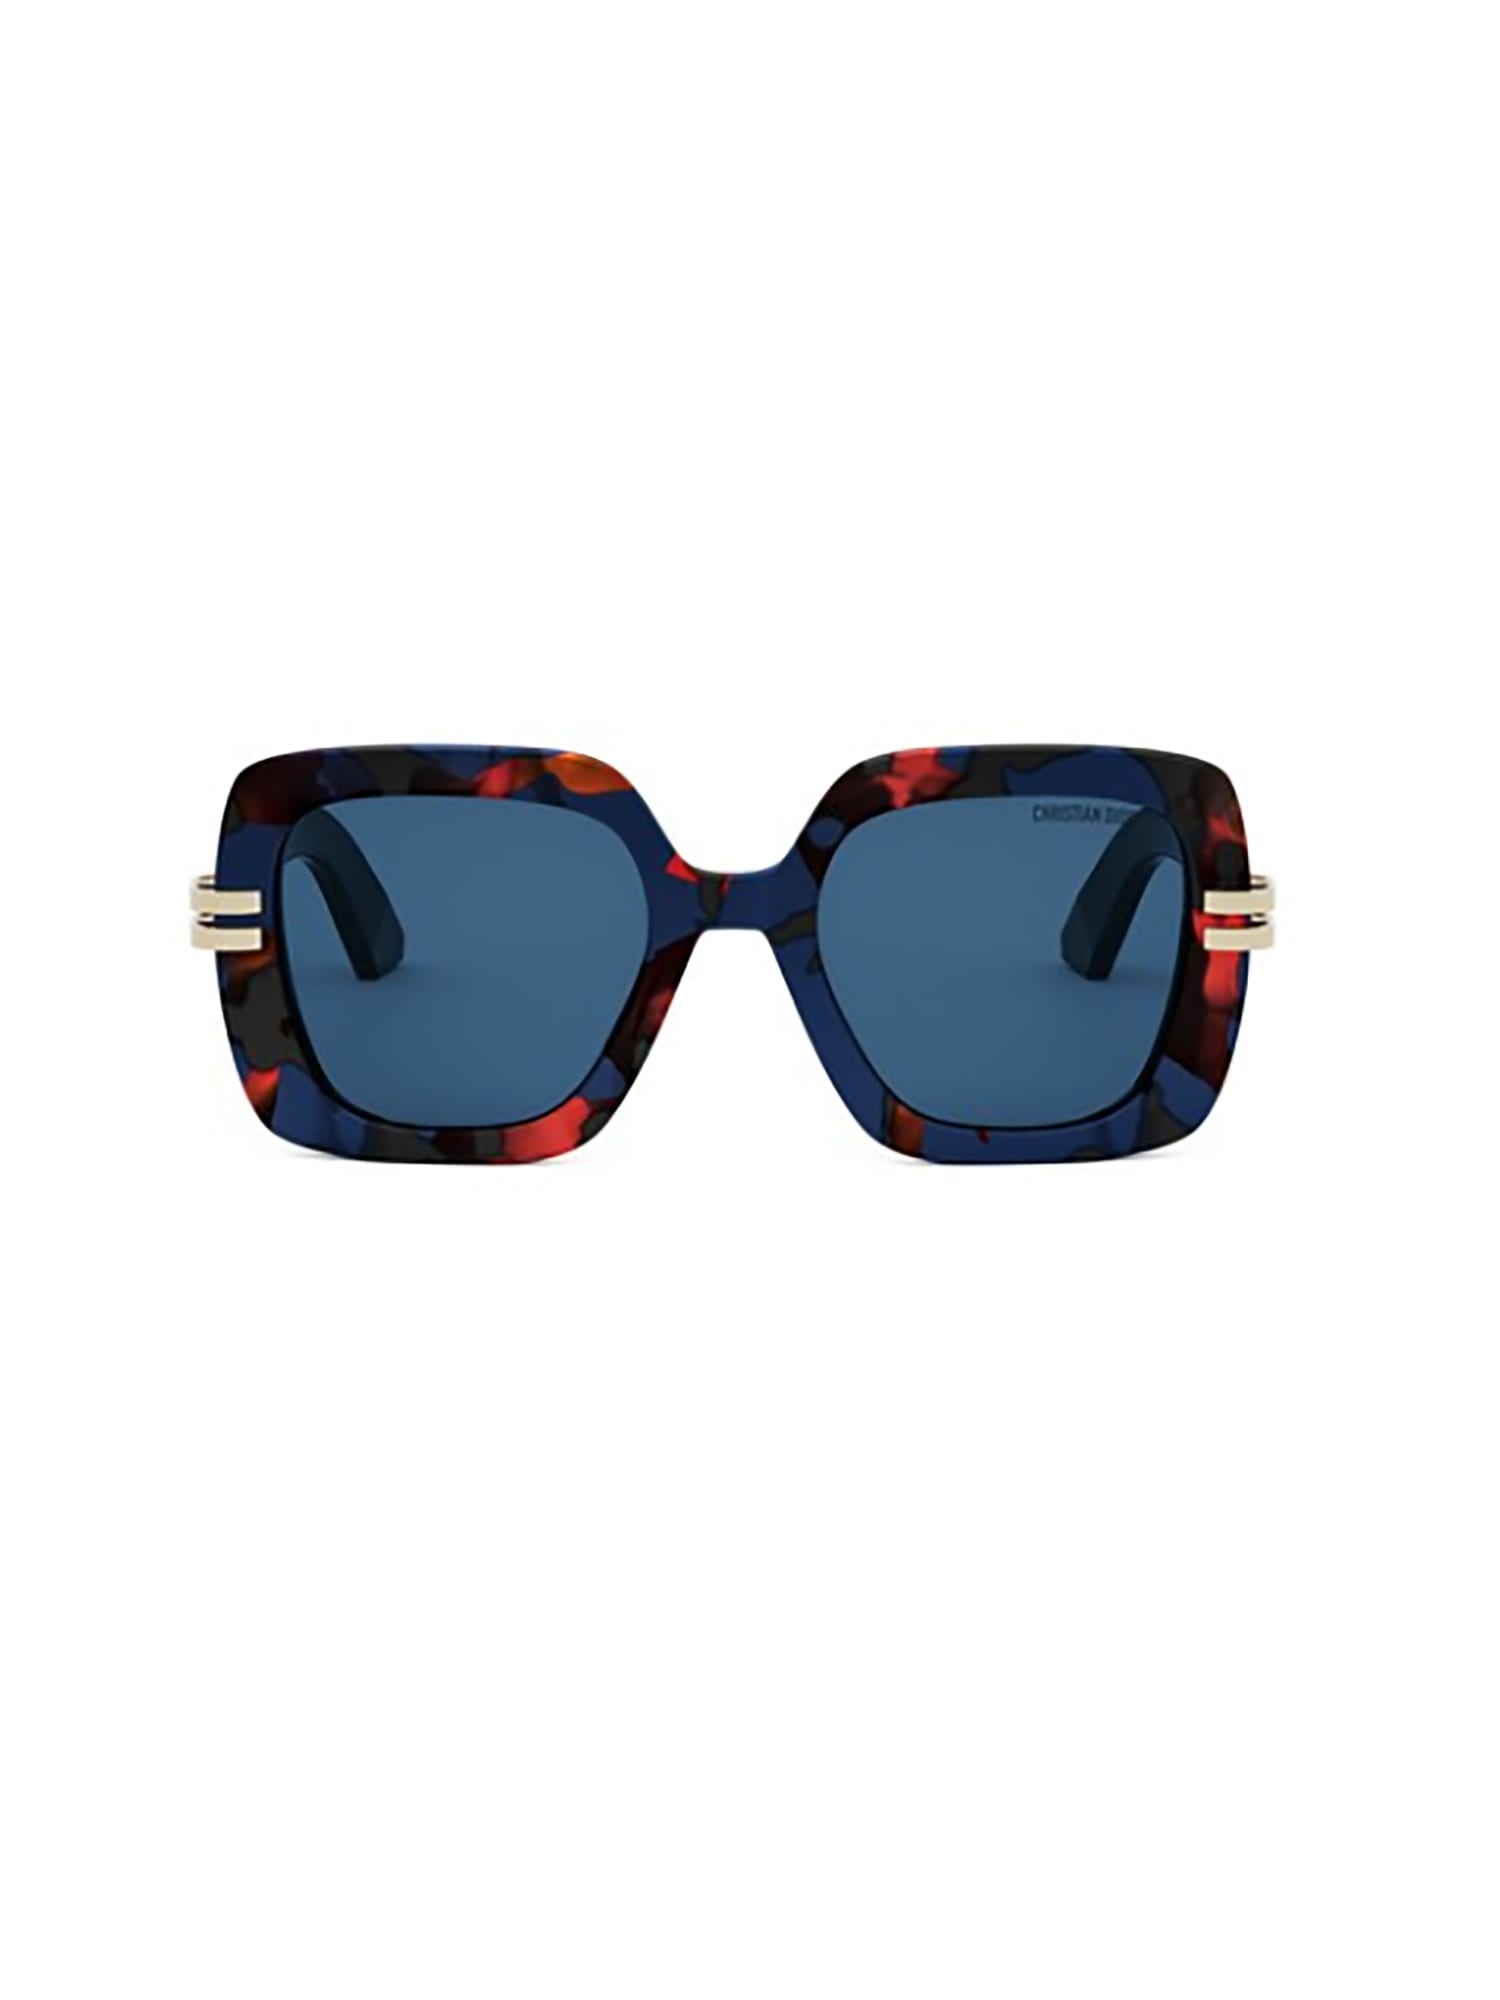 Shop Dior C S2i Sunglasses